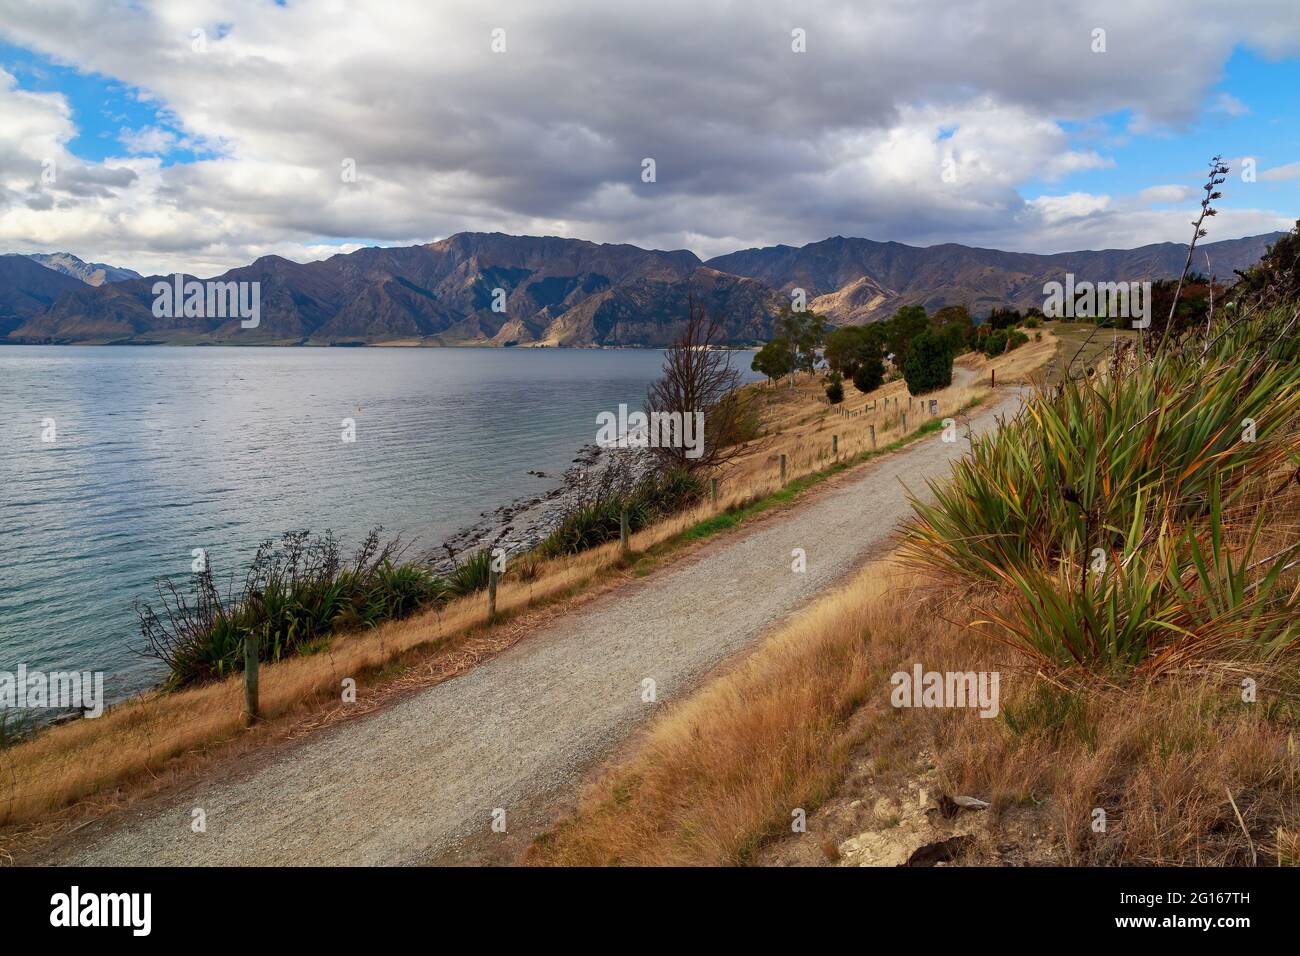 Lake Hawea in der Region Otago auf der Südinsel Neuseelands. Eine Schotterstraße verläuft entlang der Küste Stockfoto